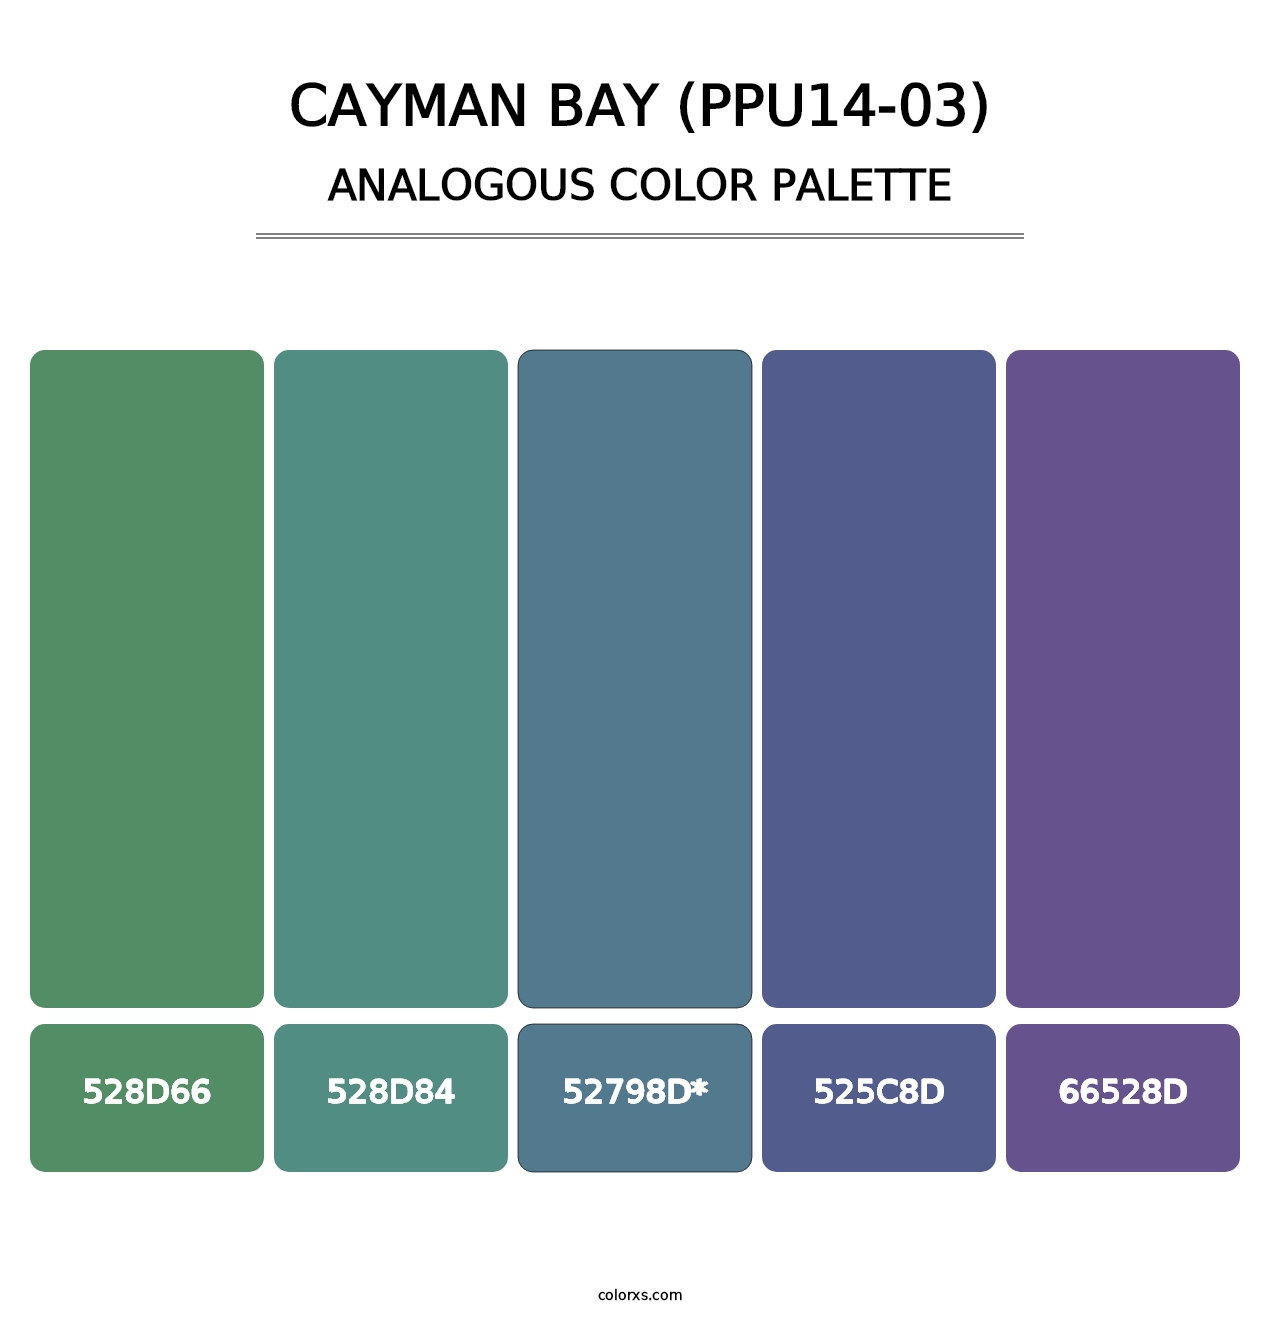 Cayman Bay (PPU14-03) - Analogous Color Palette